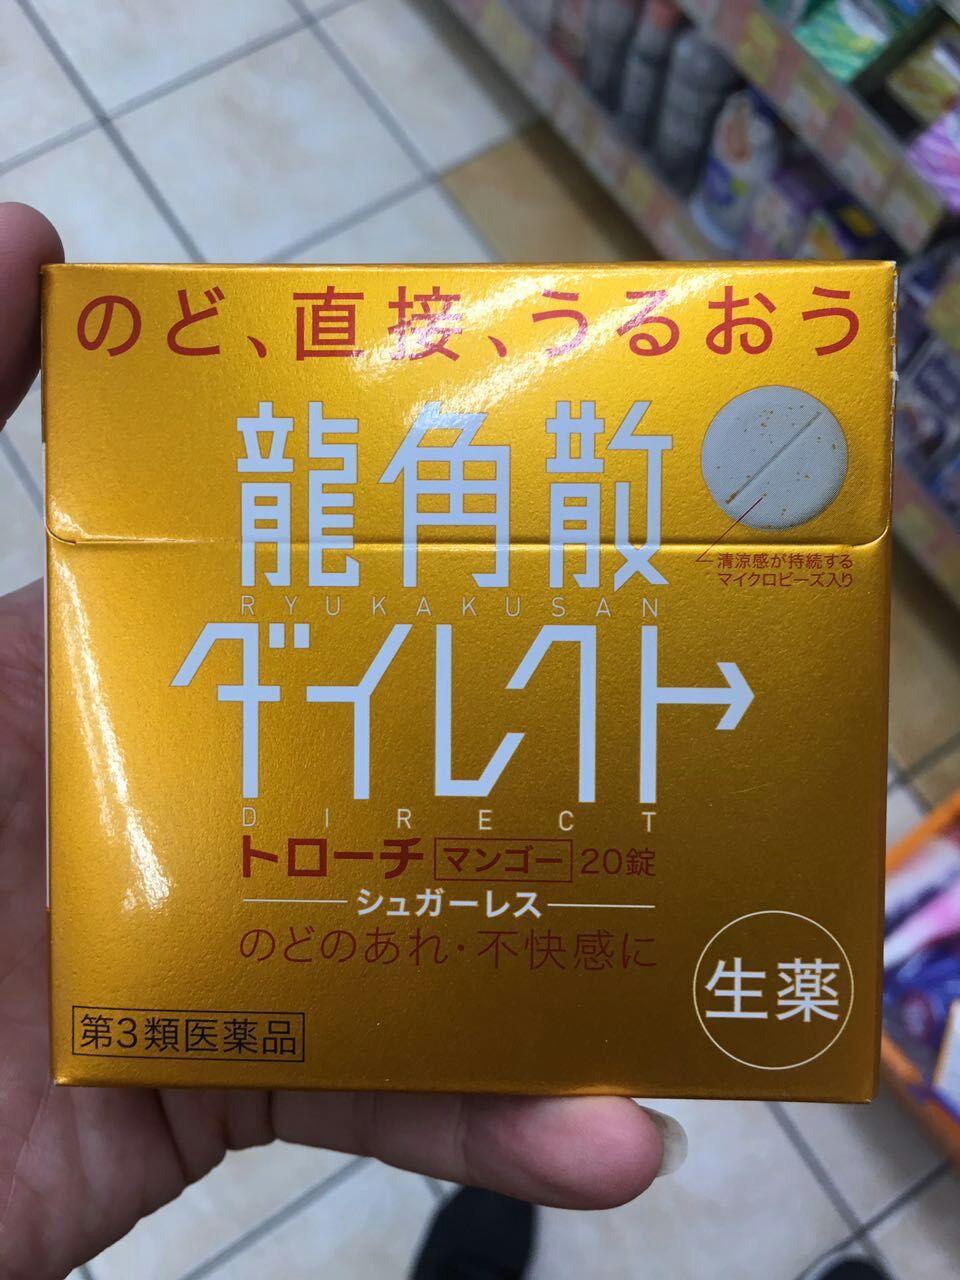 日本药店有哪些值得买的药和化妆用品推荐?